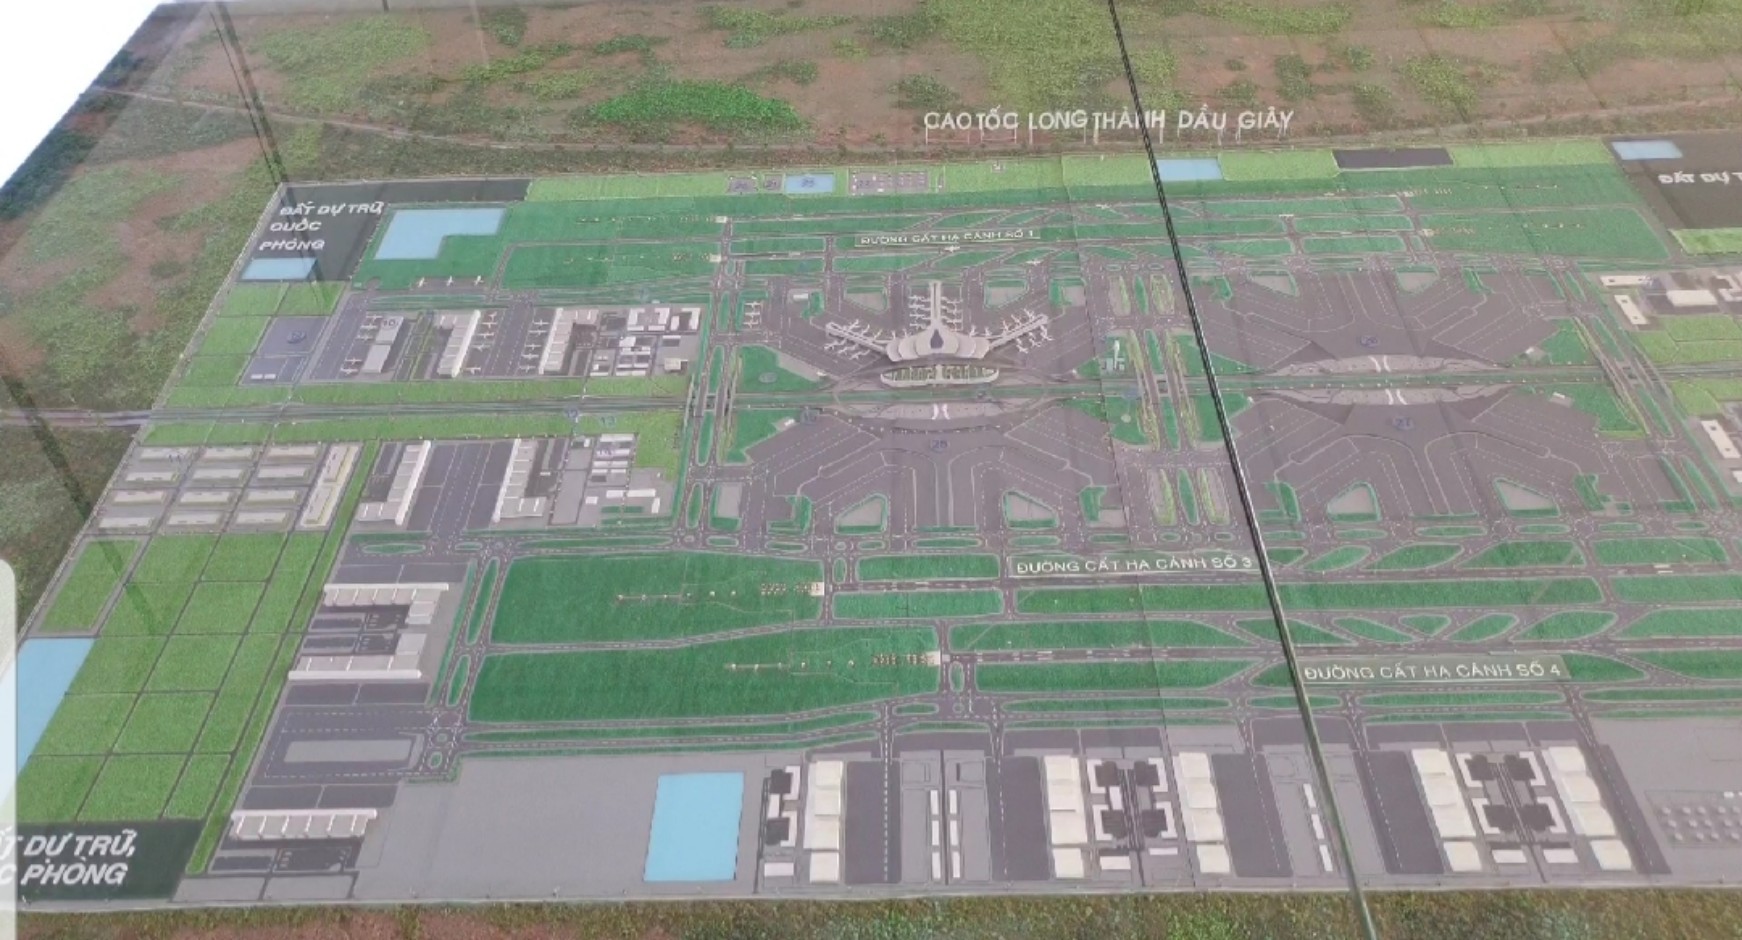 Cận cảnh đại dự án sân bay Long Thành trước ngày khởi công gói thầu 5.10 - Ảnh 2.